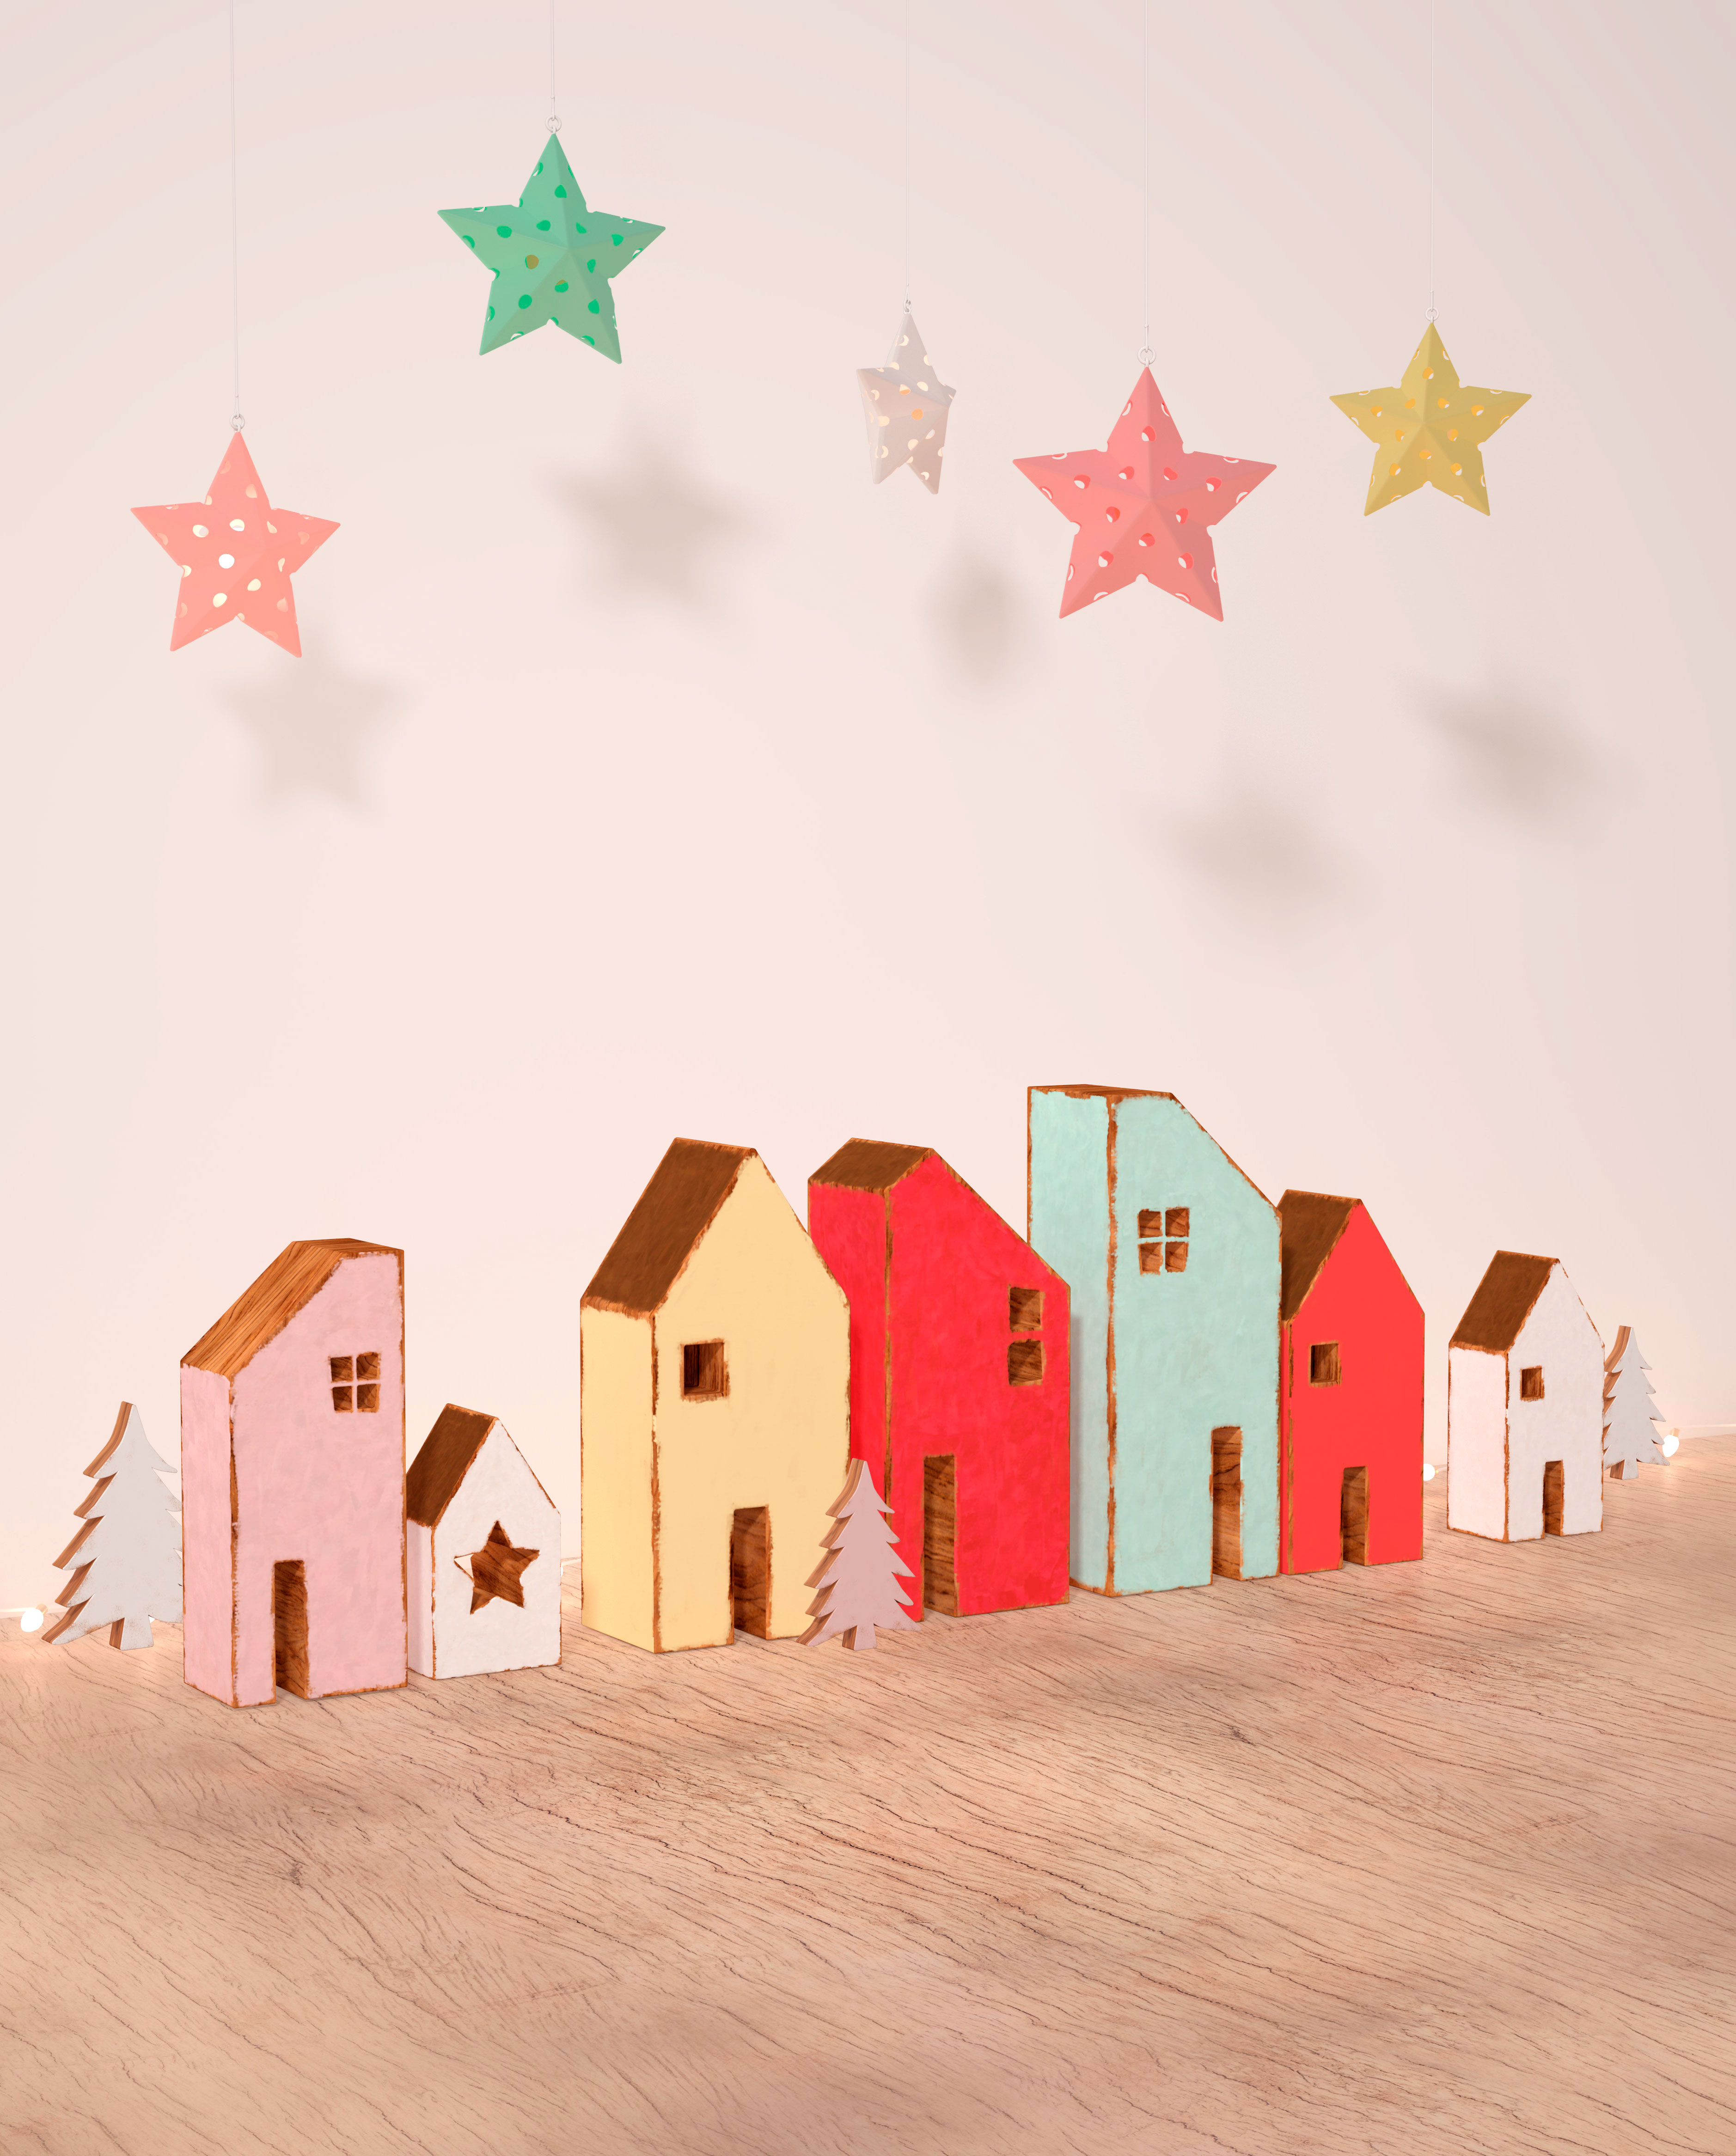 冬季圣诞节创意温馨小房子图片psd素材插图